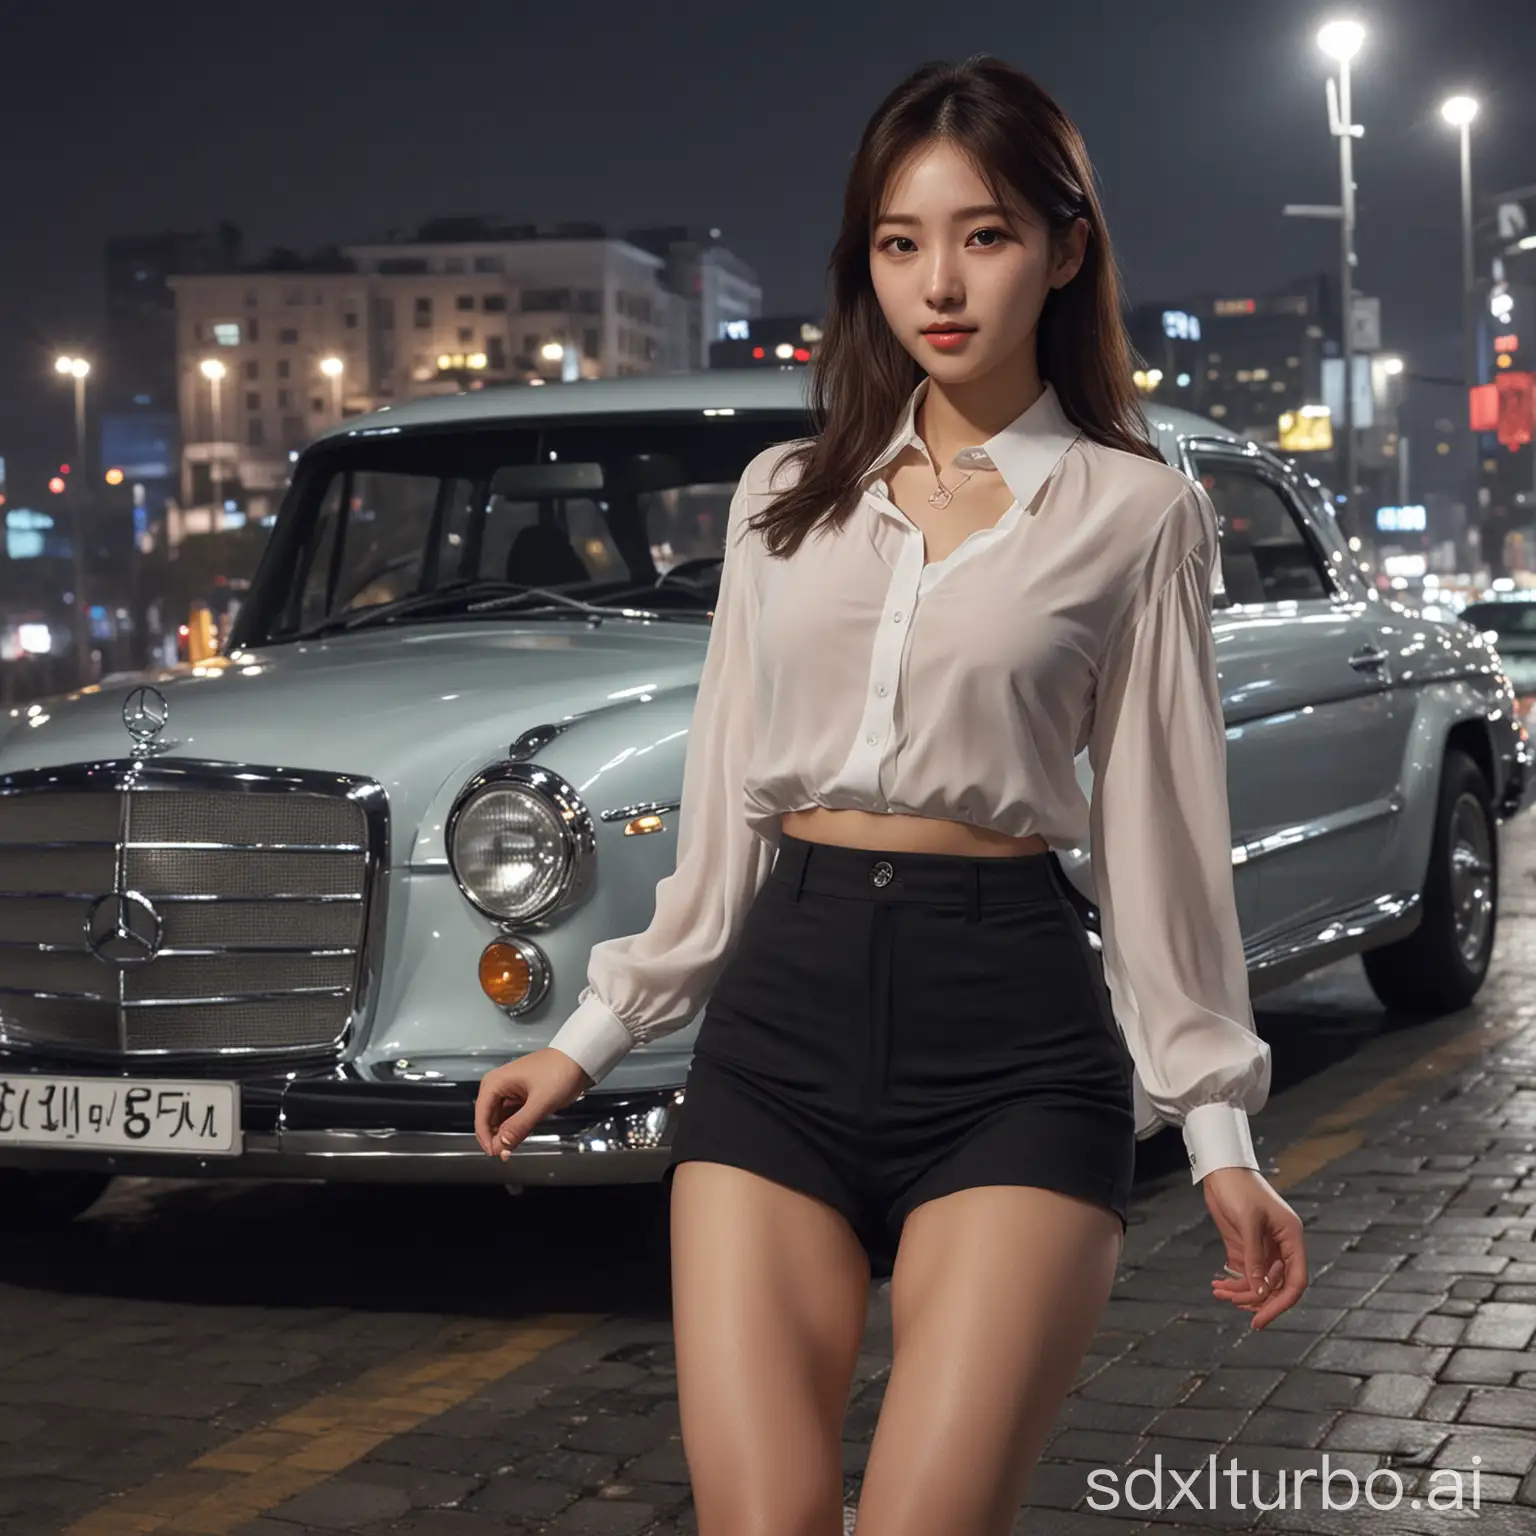 Stunning-Korean-Girl-with-Mercedes-190-in-Seoul-Night-Scene